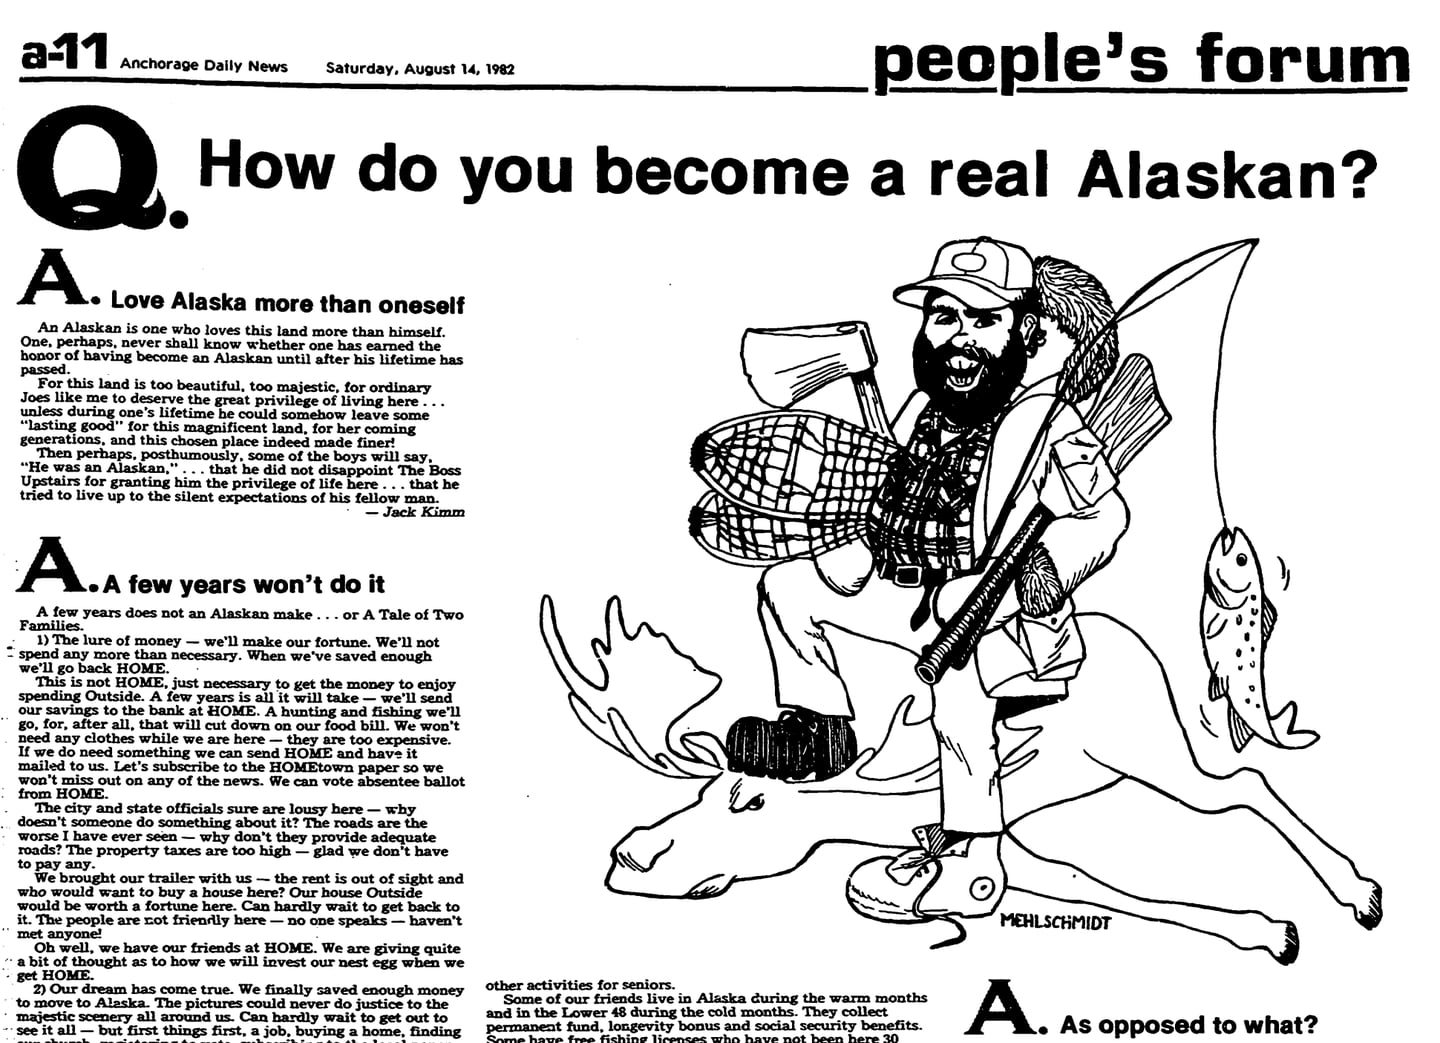 Real Alaskans